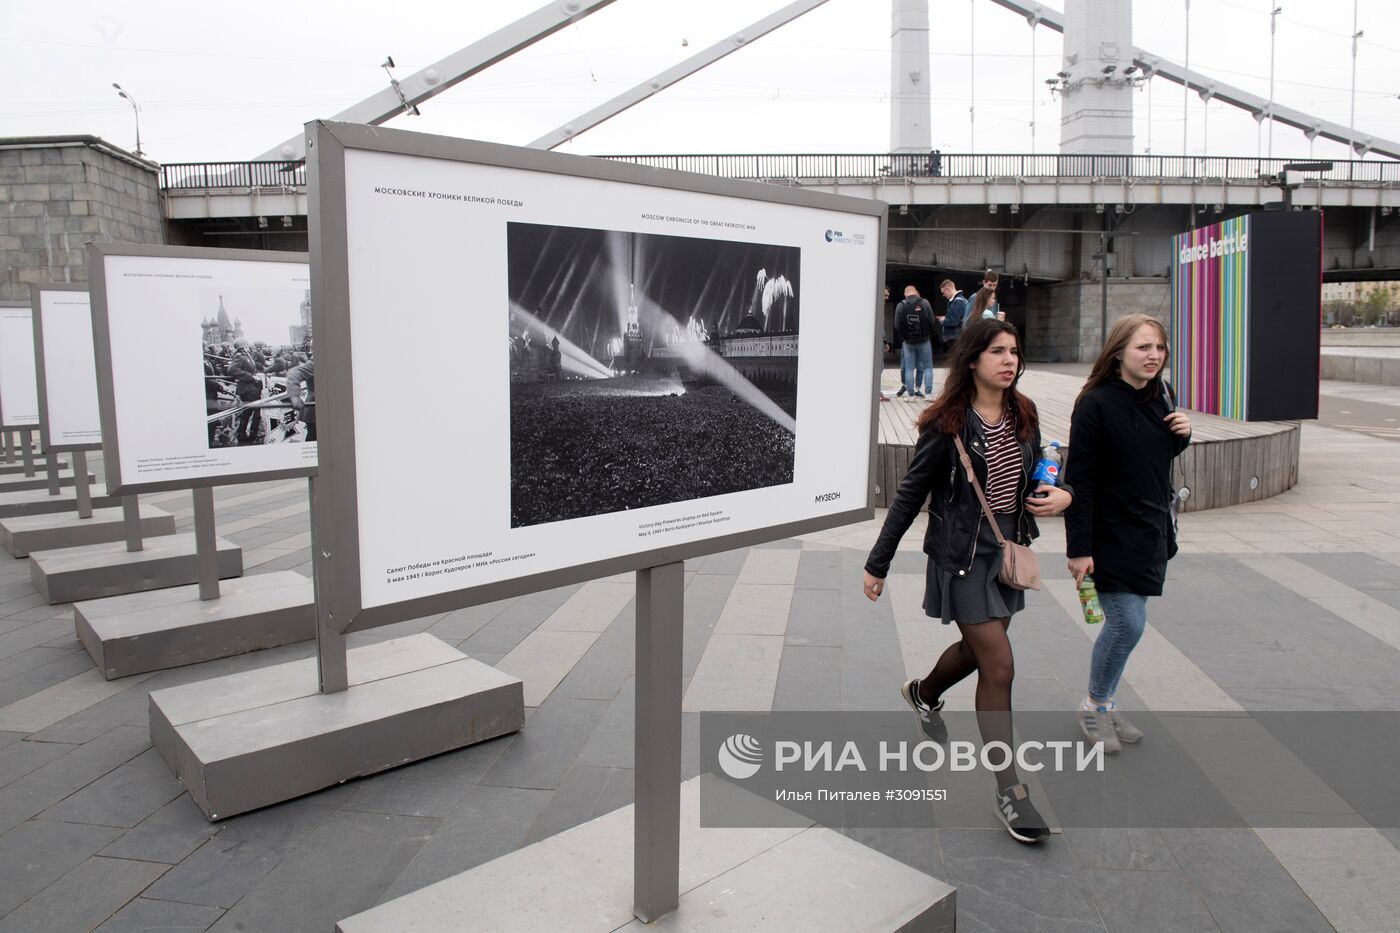 Выставка фотохроники военных лет в парке "Музеон" в Москве